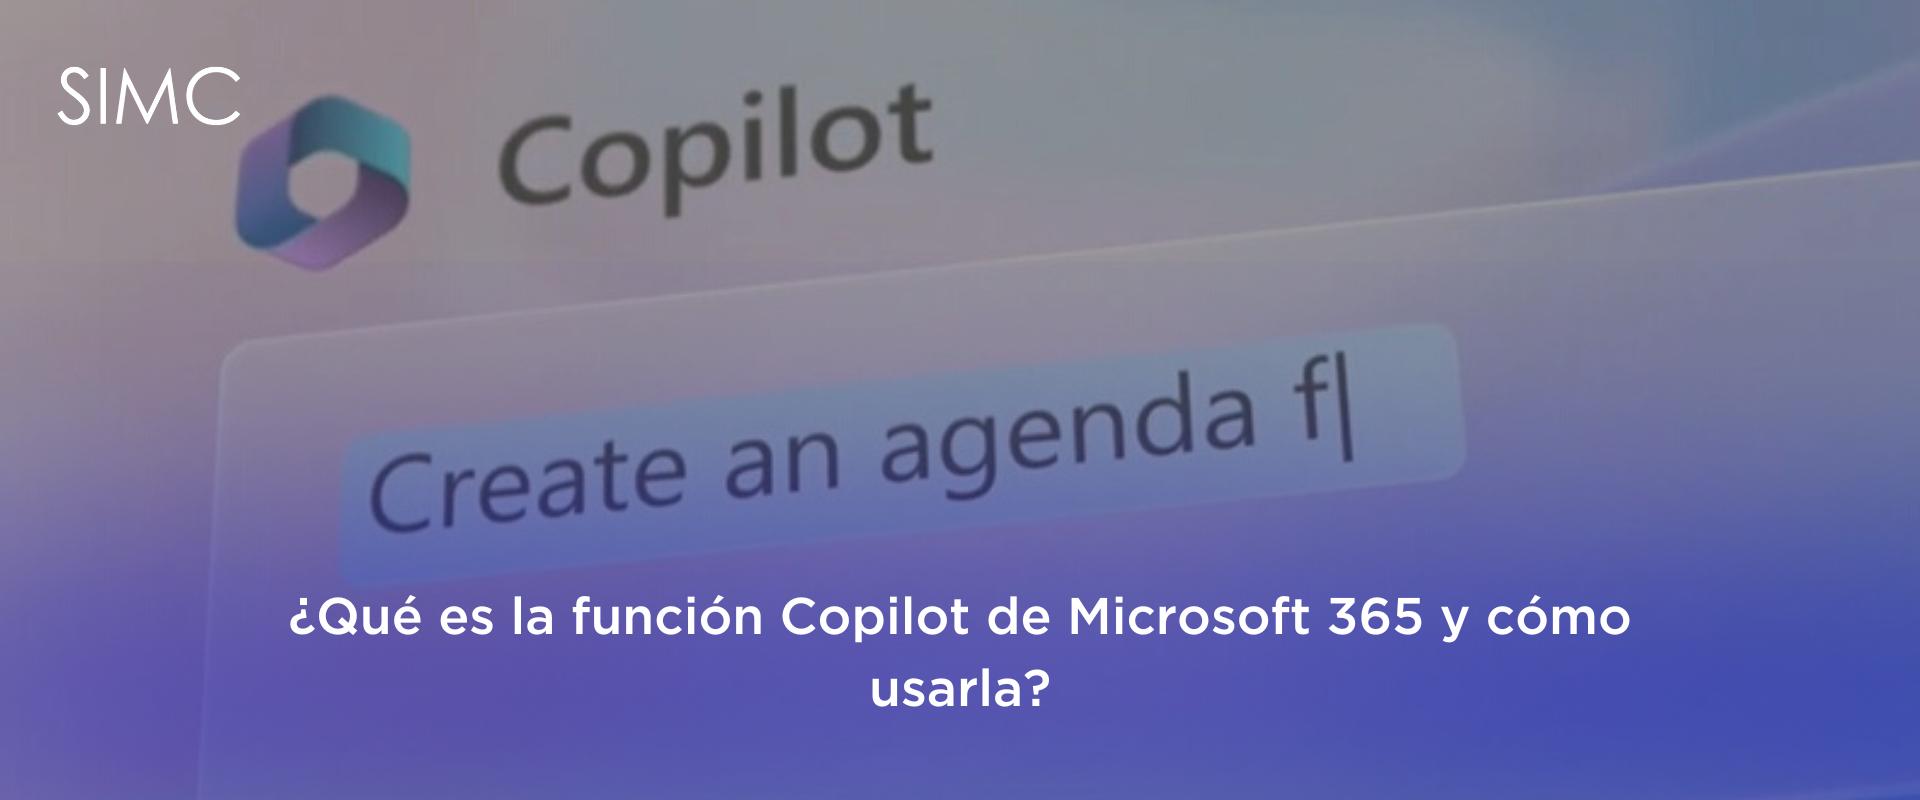 ¿Qué es la función Copilot de Microsoft 365 y cómo usarla?